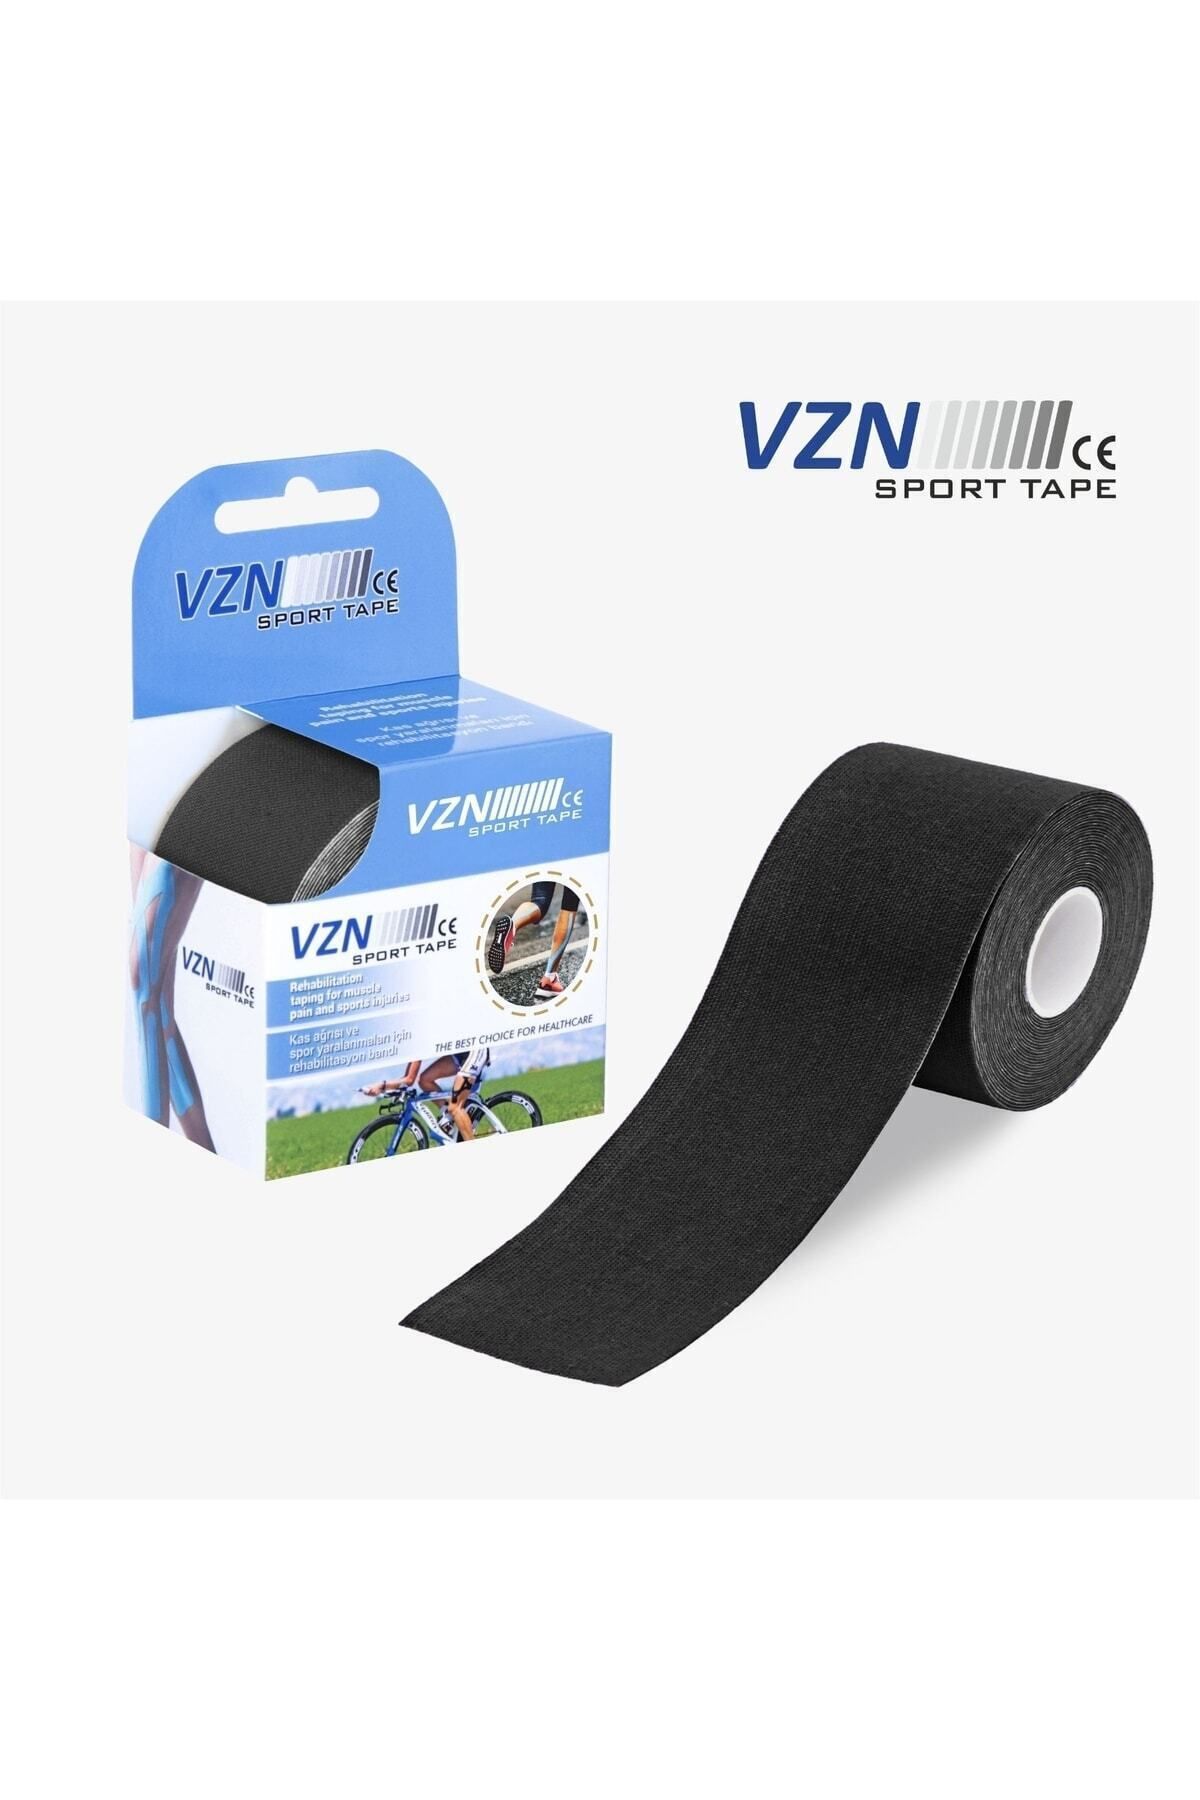 VZN 5 Cm X 5 M Ağrı Bandı Sport Tape Bant Sporcu Bandı Ağrı Bandı Siyah